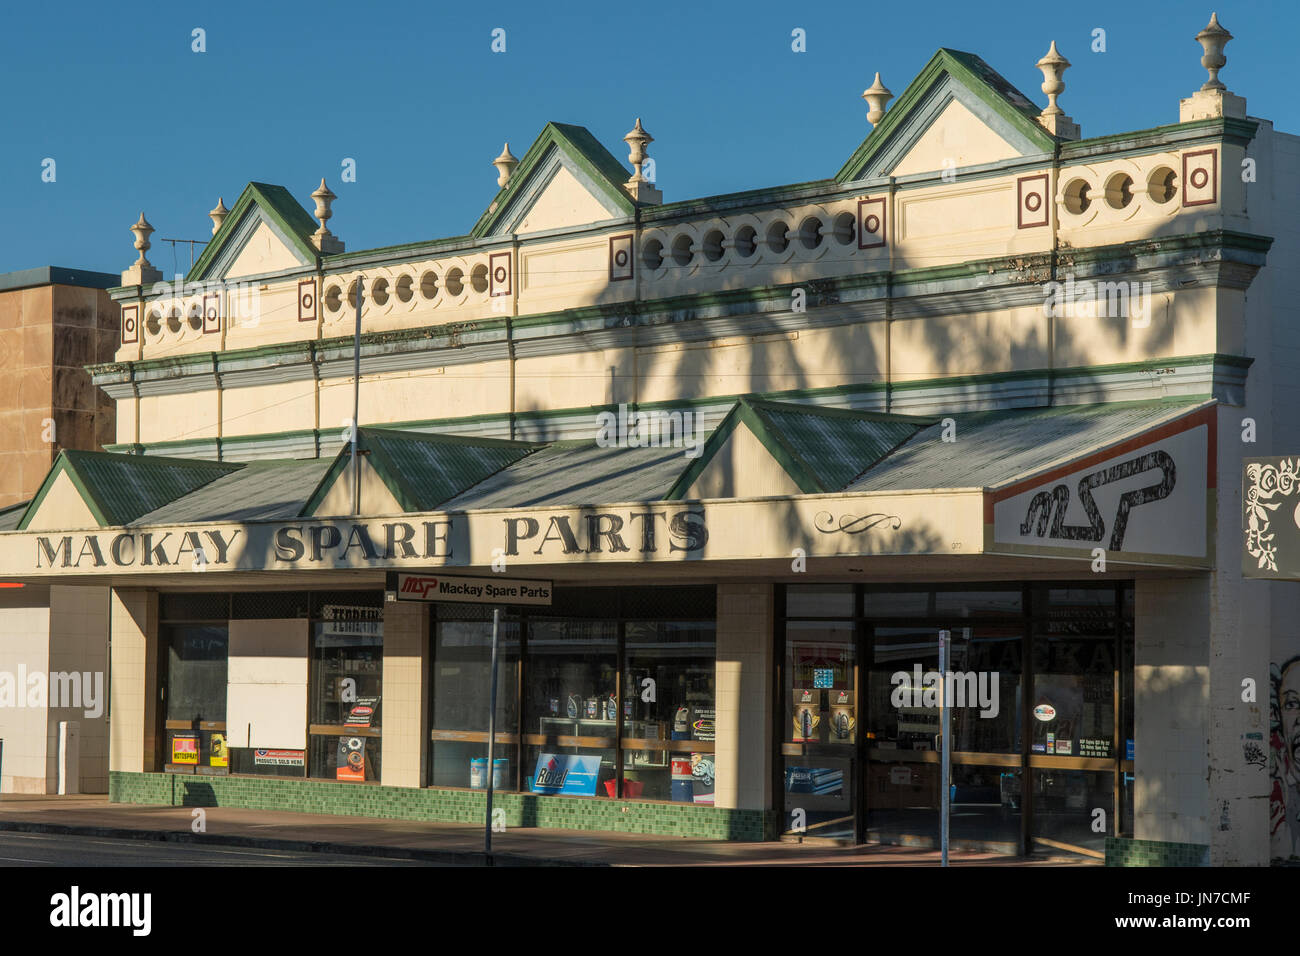 Art Deco Facade of Mackay Spare Parts Building, Mackay, Queensland, Australia Stock Photo